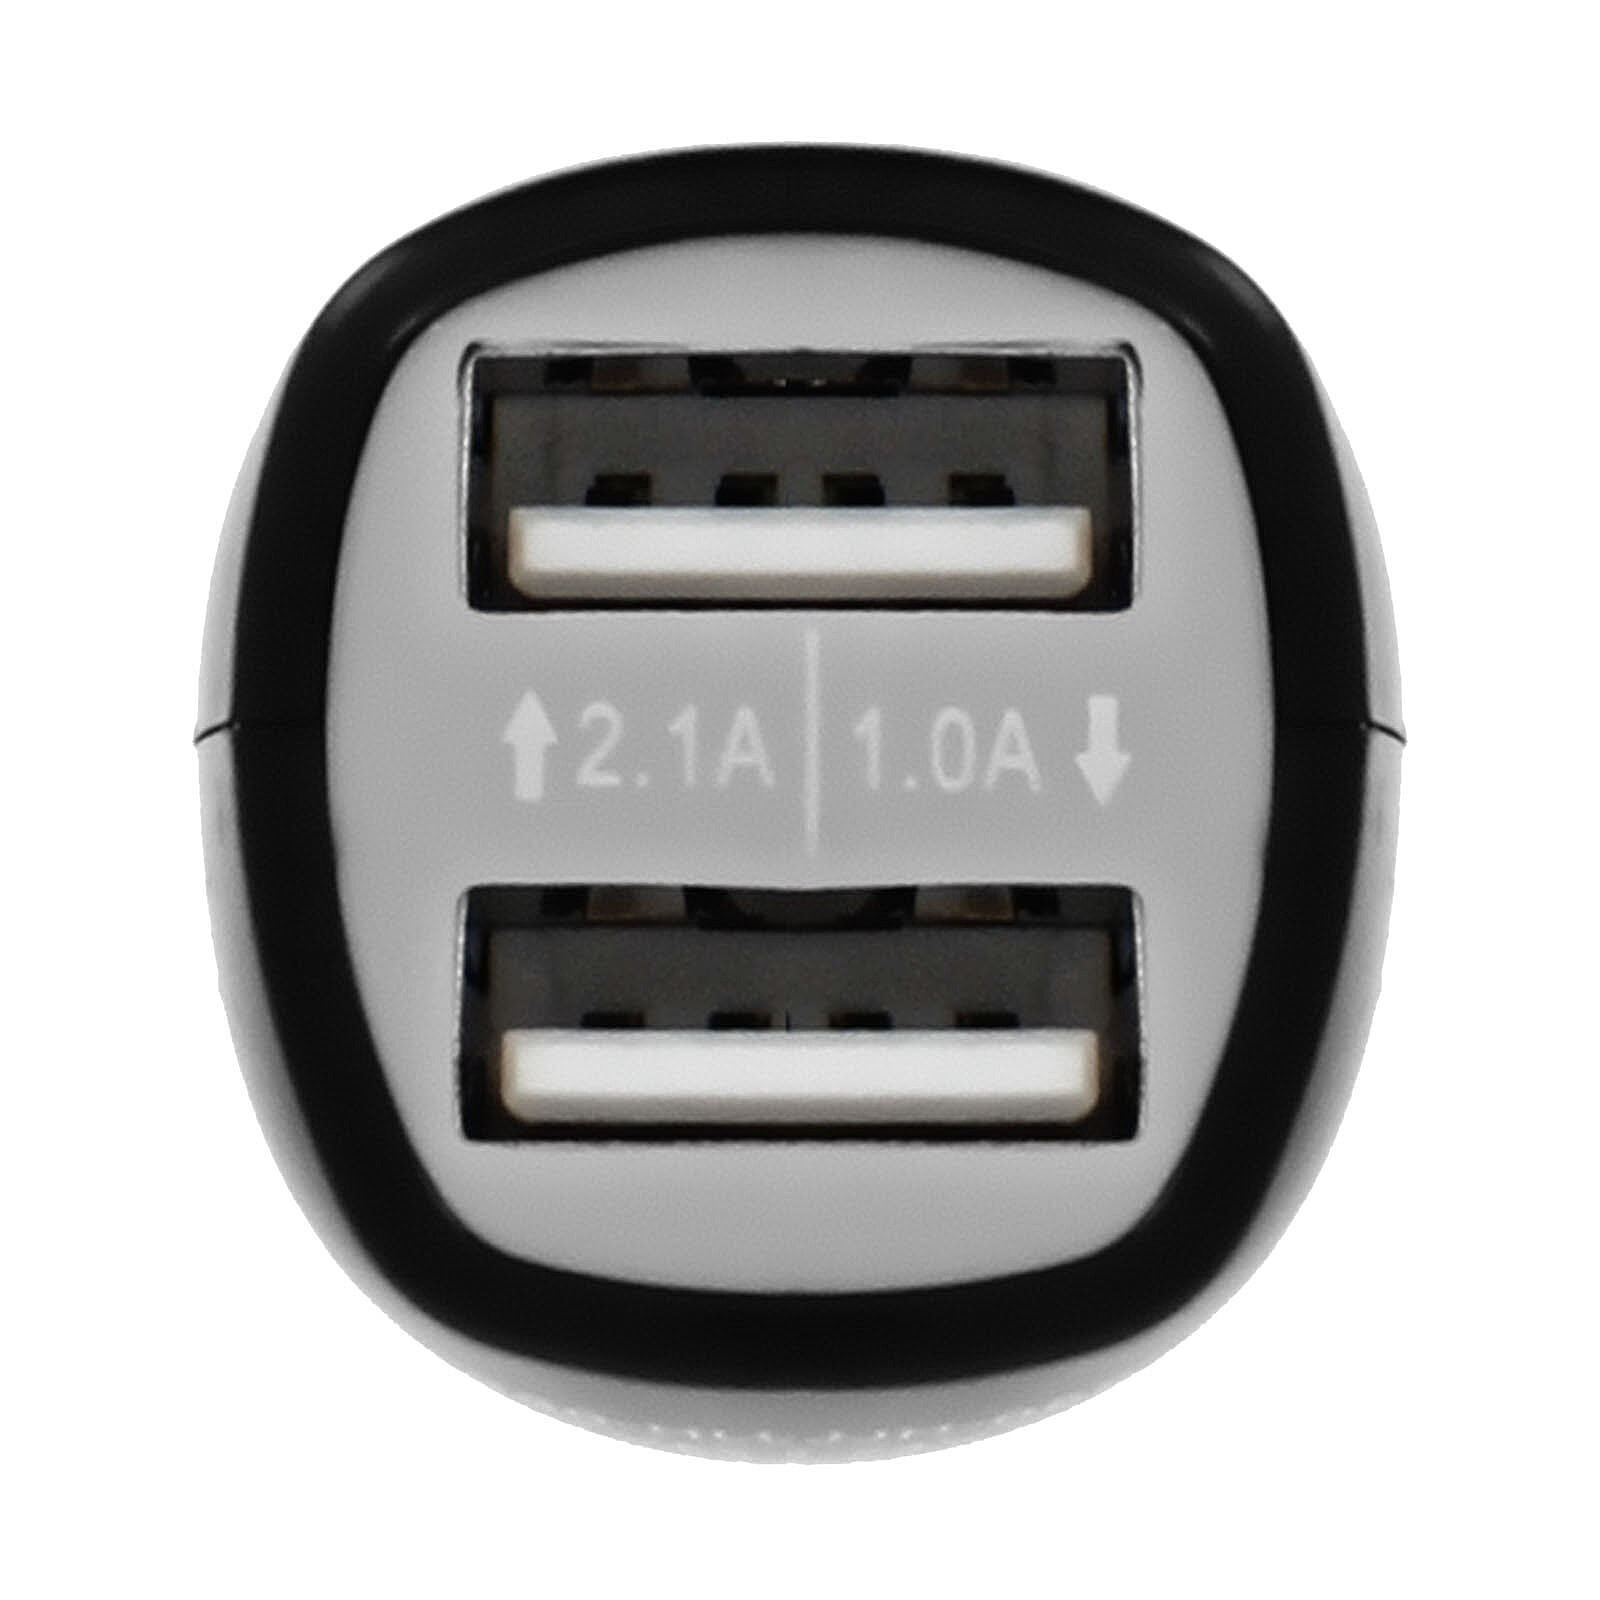 Chargeur USB pour allume-cigare 12v avec 2 ports USB 2,1A